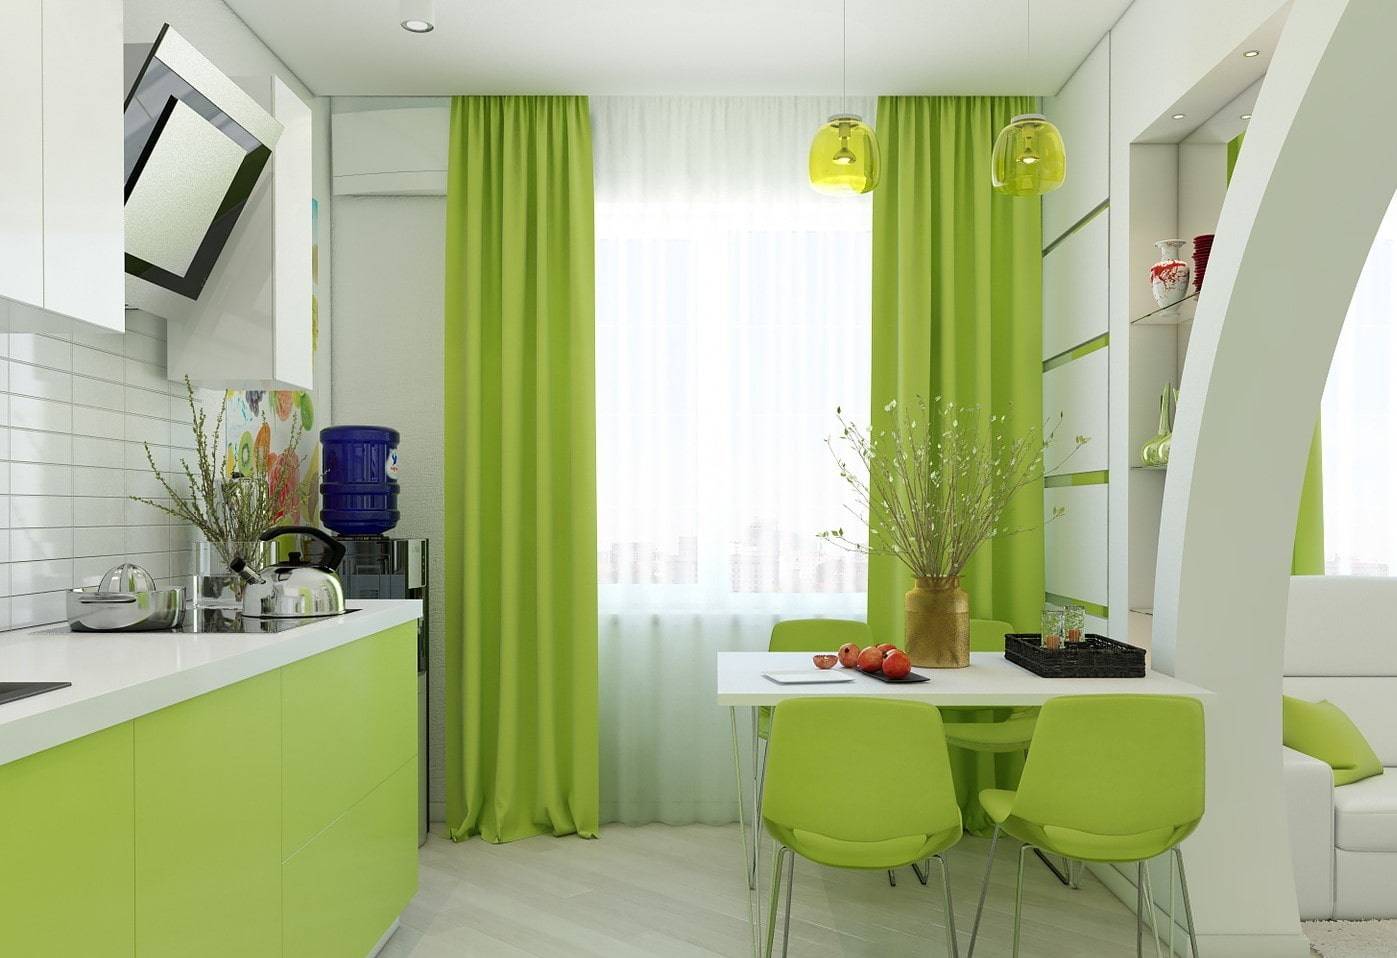 Желтая кухня: сочетание в интерьере желто-зеленого и салатового гарнитура с полом, стенами, шторами